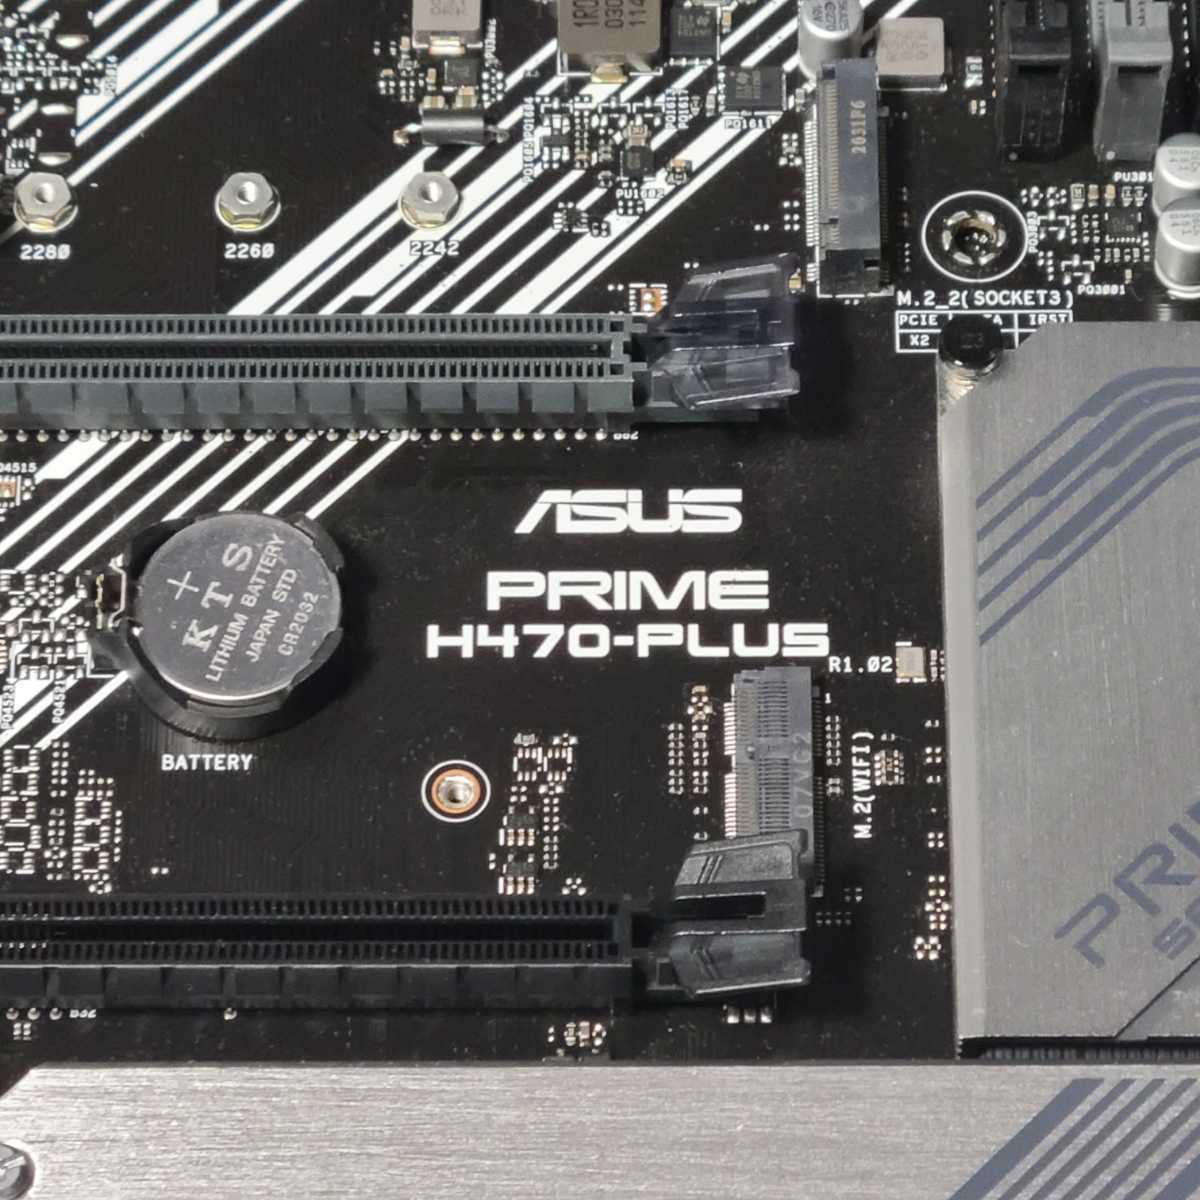 ASUS PRIME H470-PLUS IOパネル付属 LGA1200 ATXマザーボード 第10世代